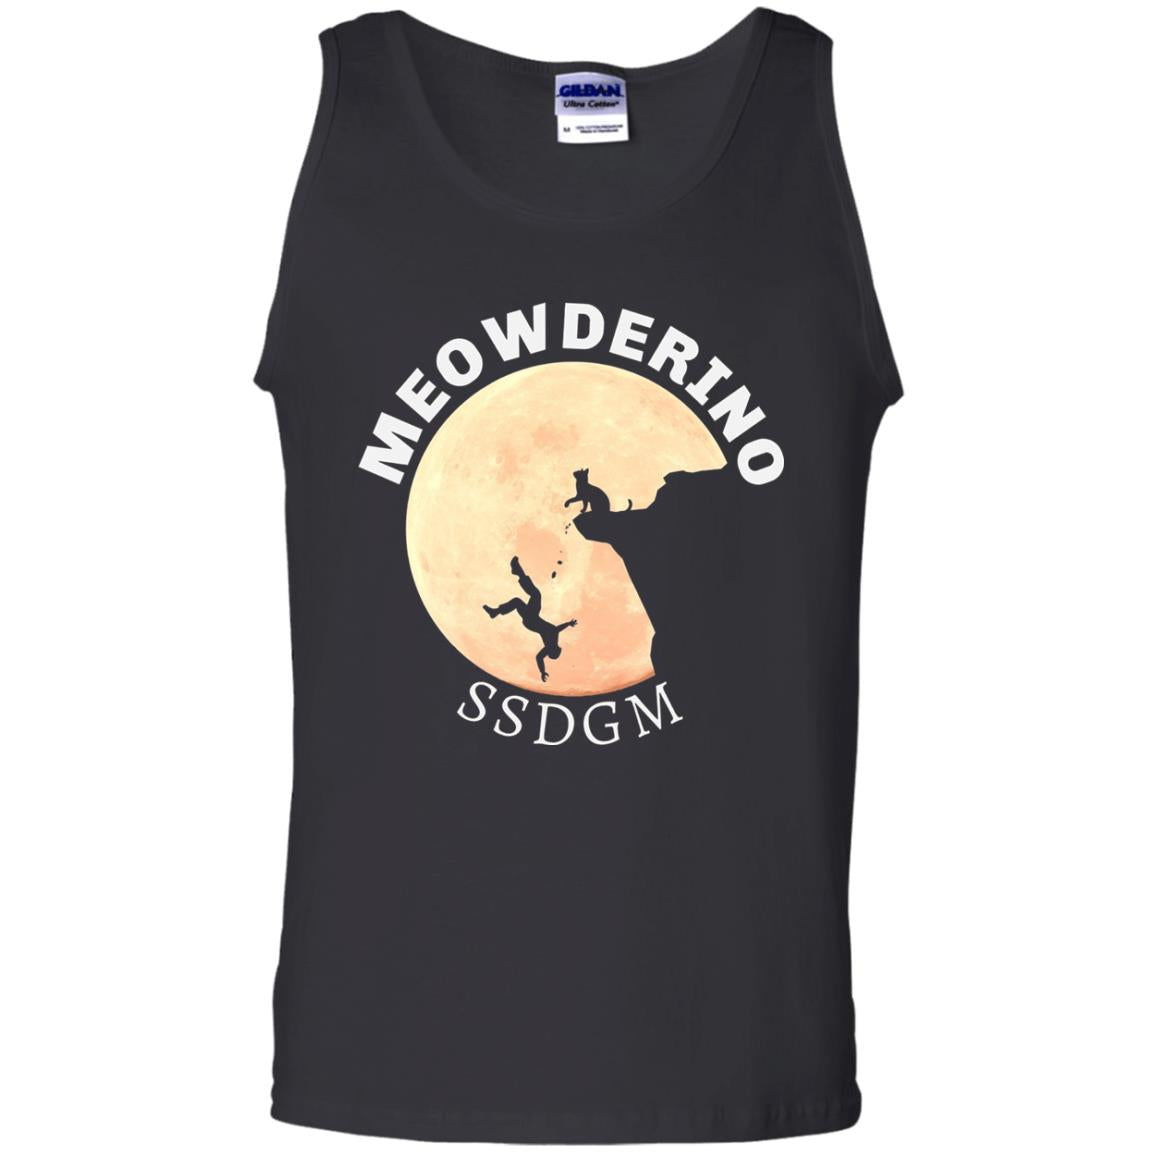 Meowderino T-shirt For Murderino Ssdgm